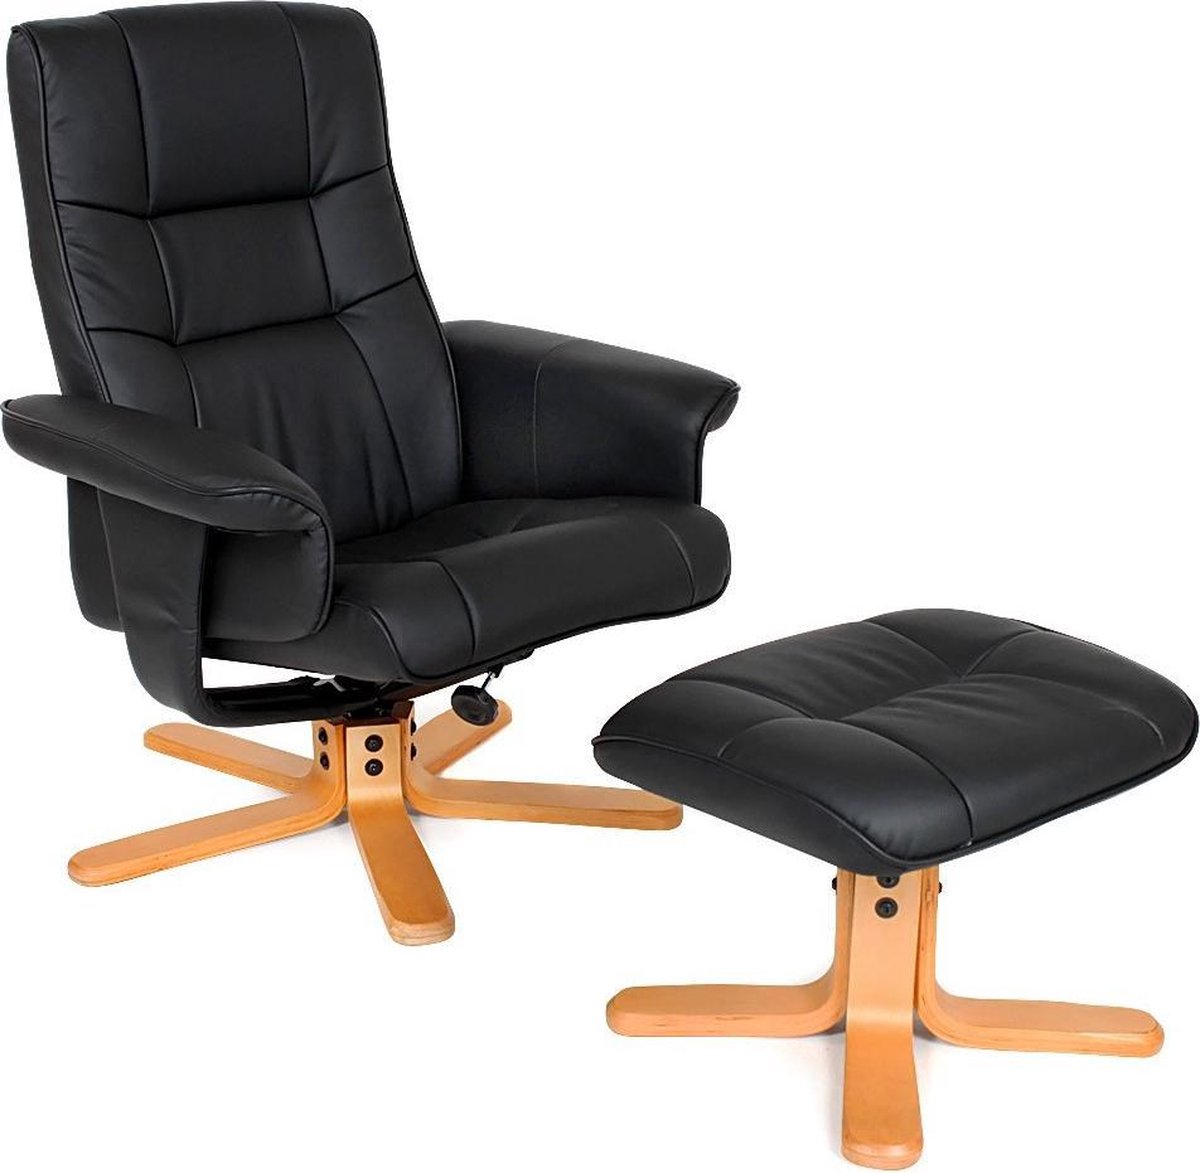 TV fauteuil relax stoel relaxstoel met kruk - 401058 | bol.com